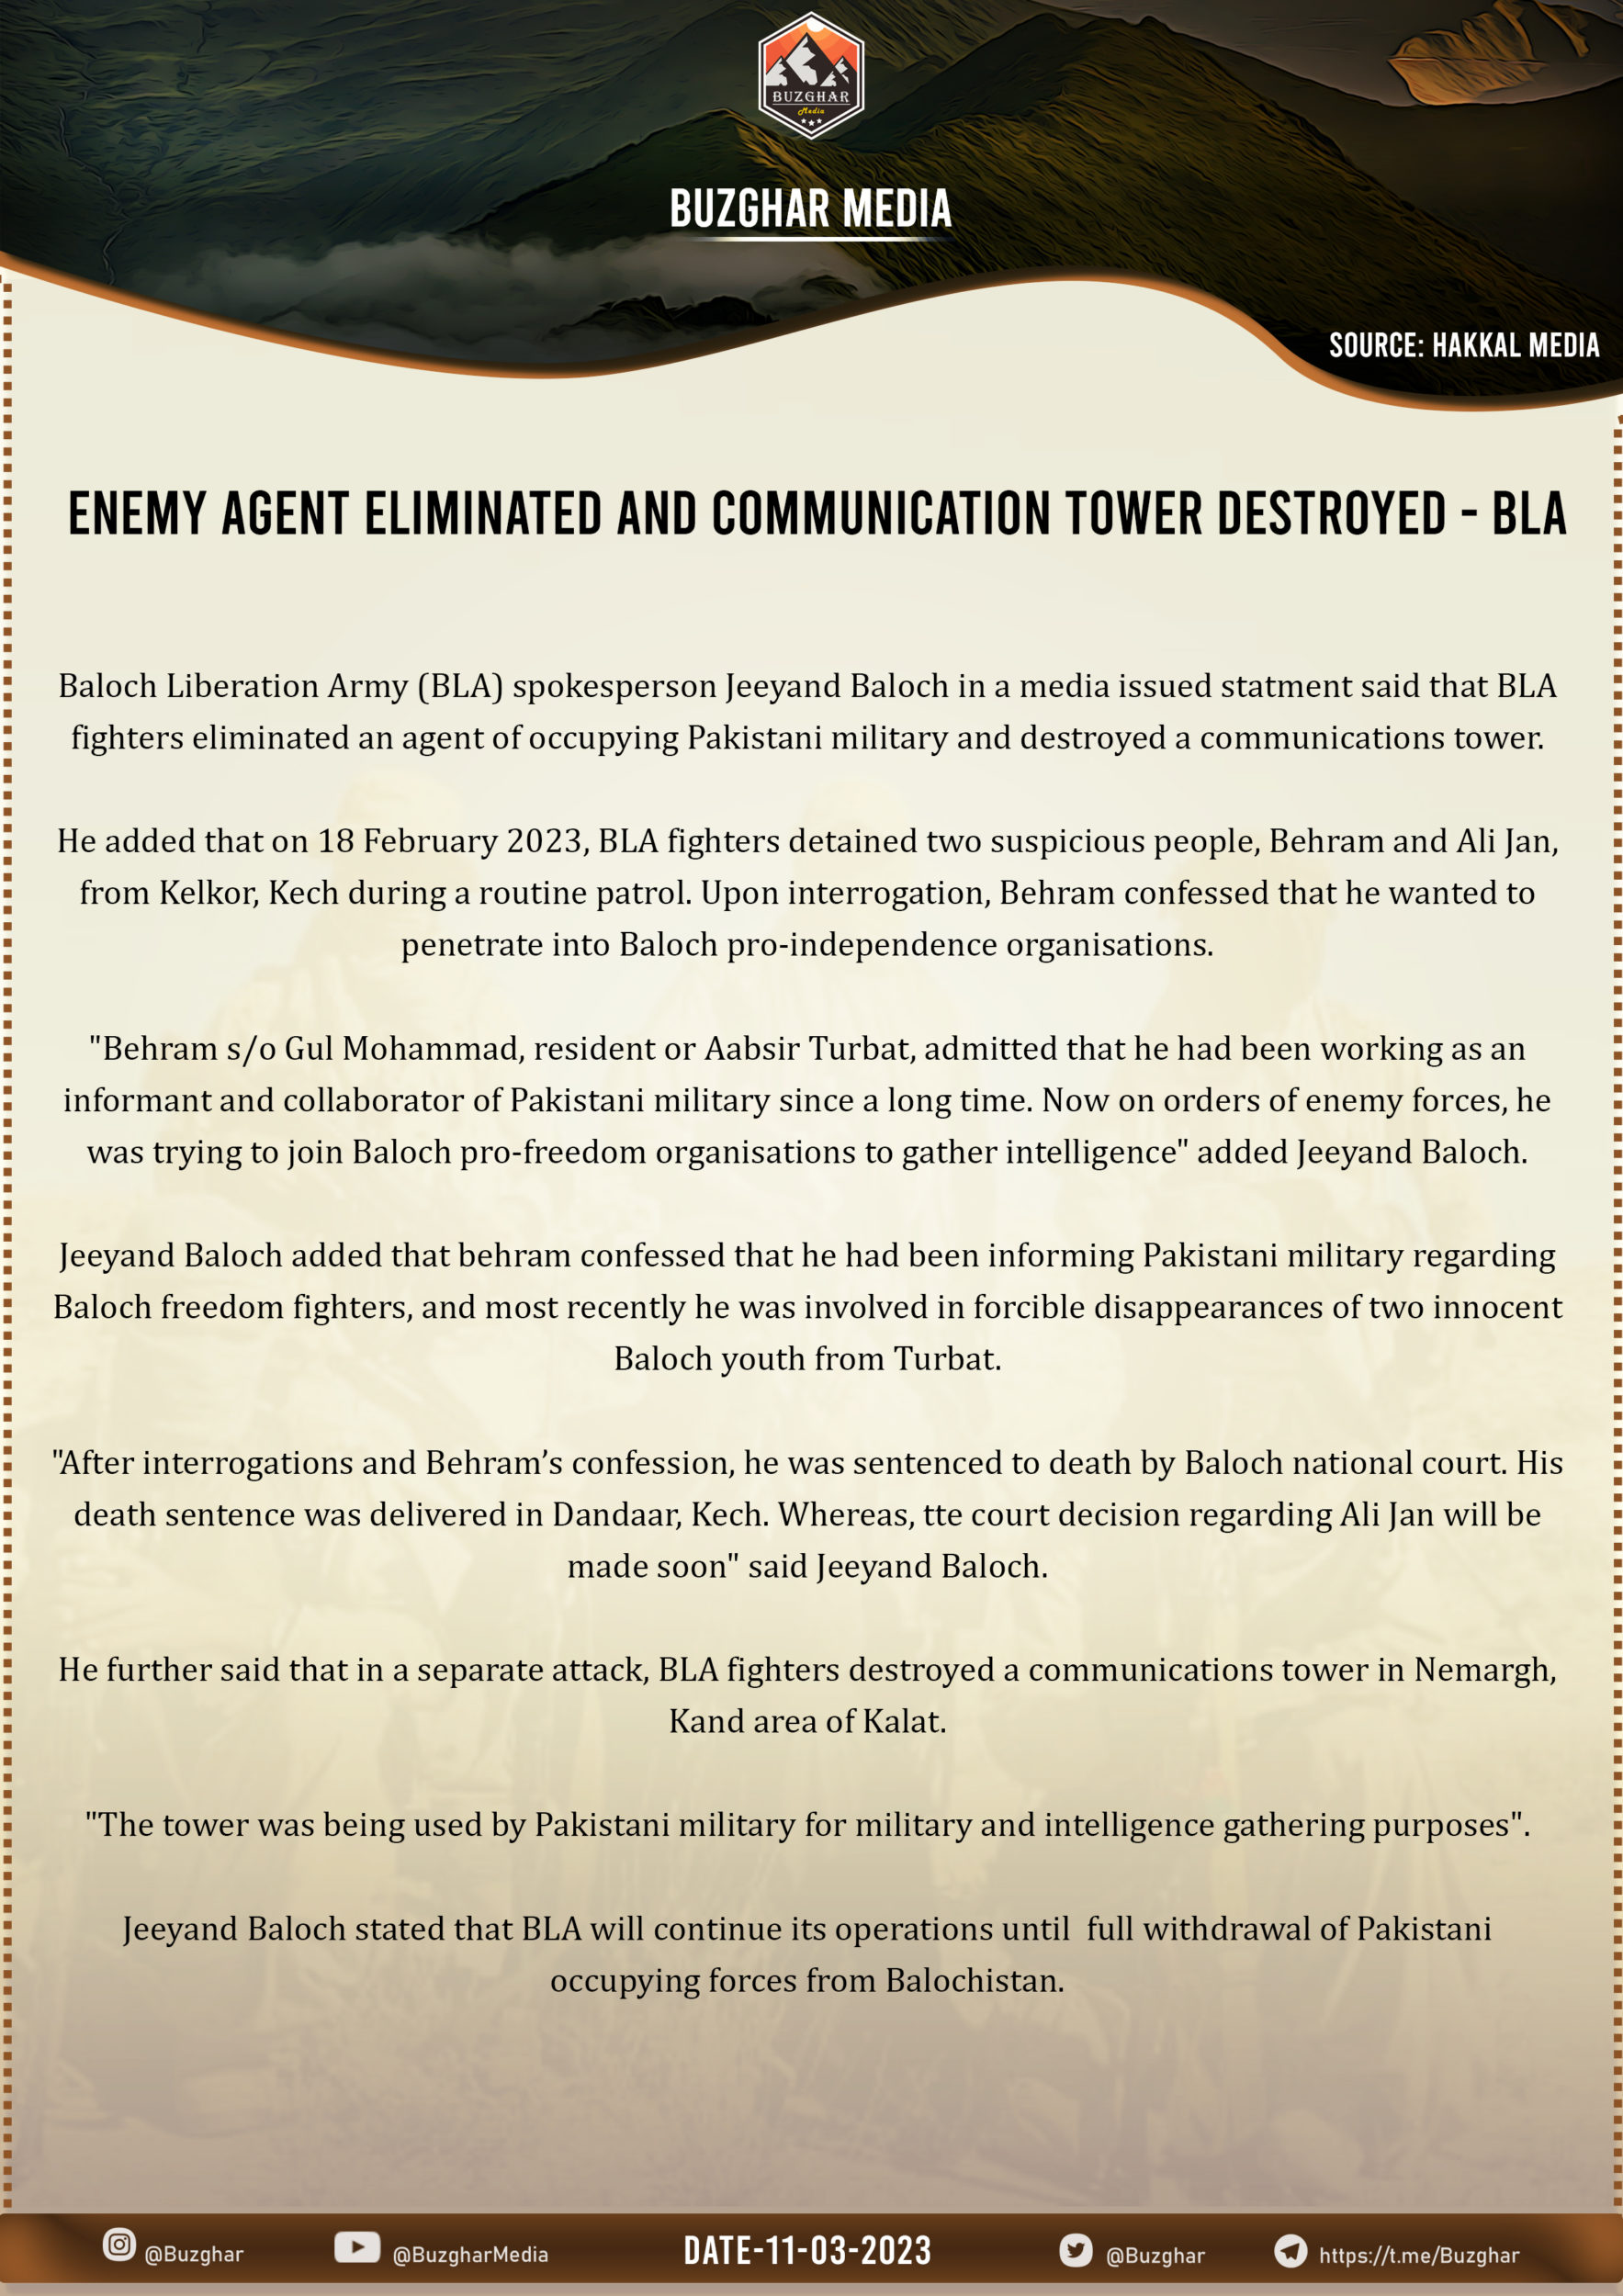 Baloch Liberation Army (BLA) Eliminated 'Pakiatani Agent' in Kech and Telecommunication Tower in Kalat, Balochistan, Pakistan – 11 March 2023